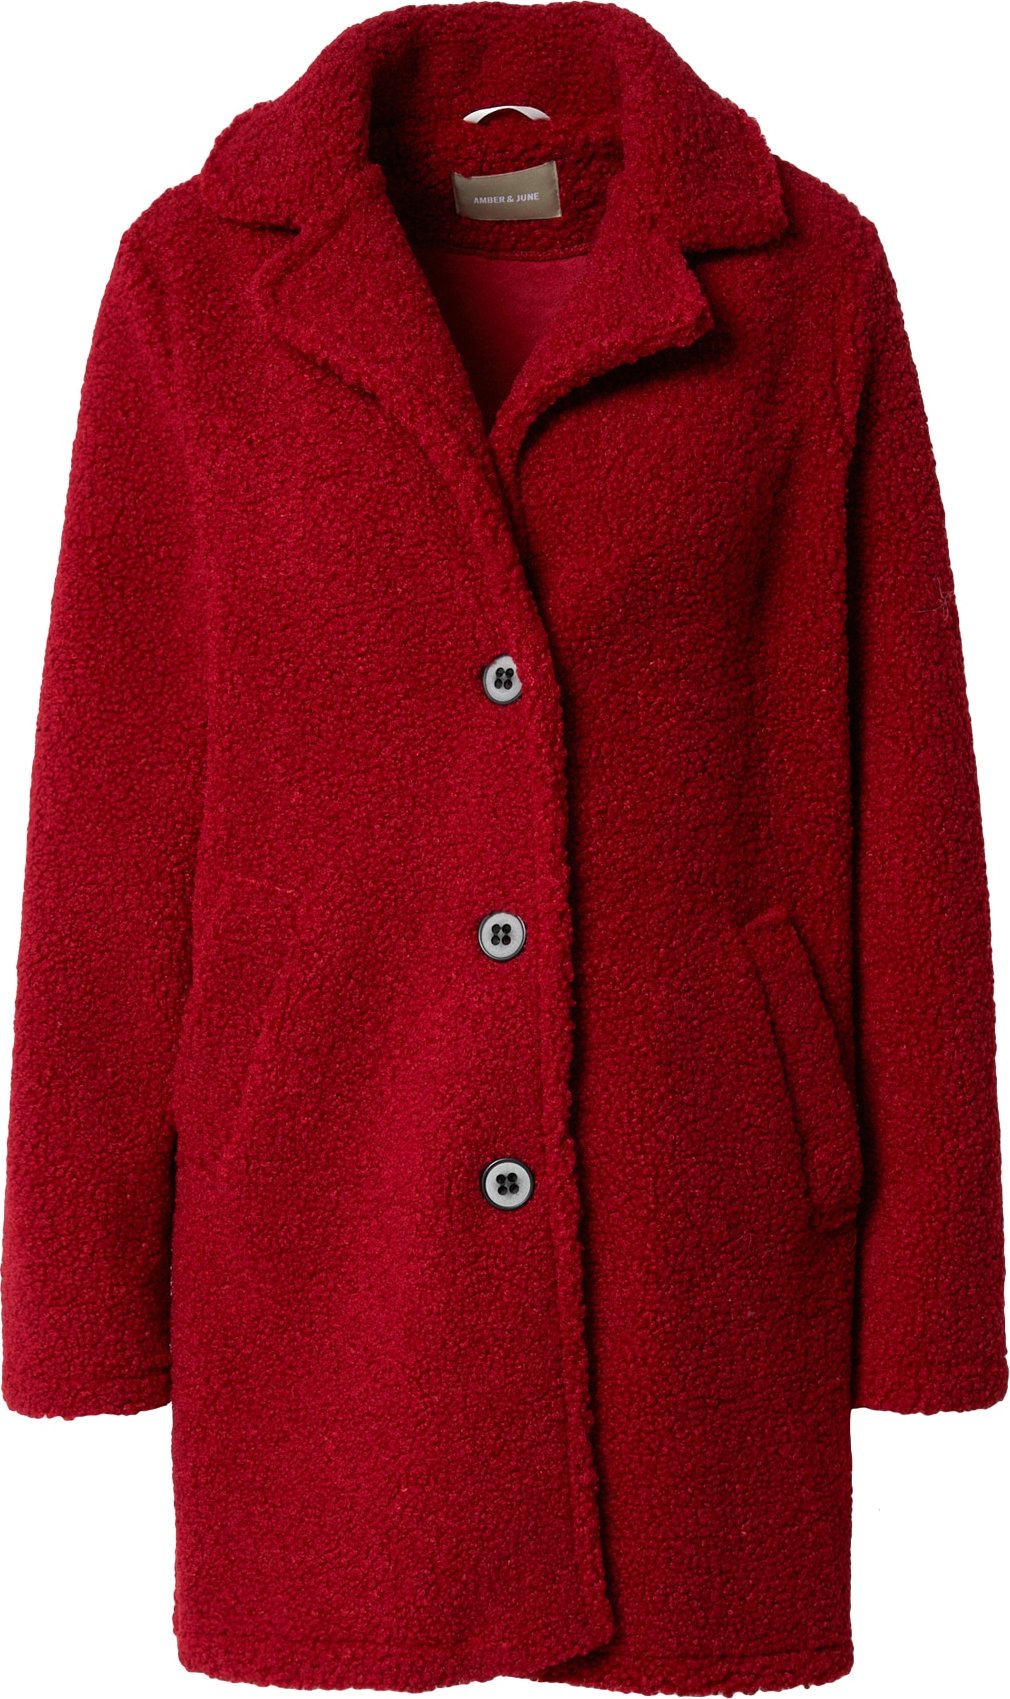 Amber & June Přechodný kabát červená